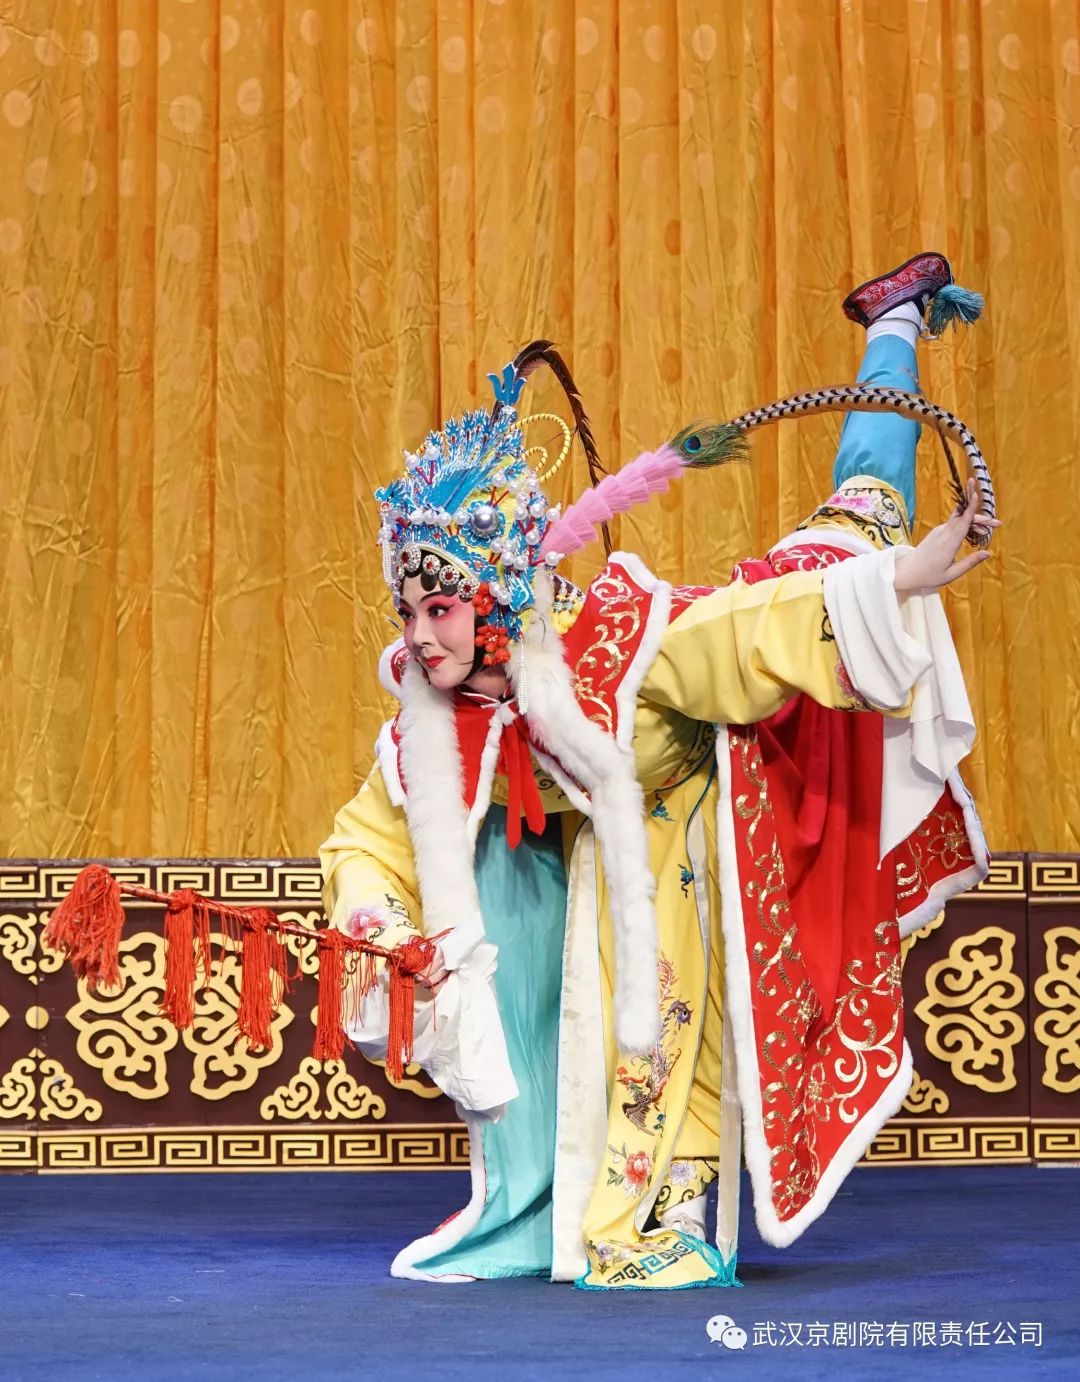 本周由武汉京剧院2013级京剧班学员马静玟上演的《昭君出塞》由冯春